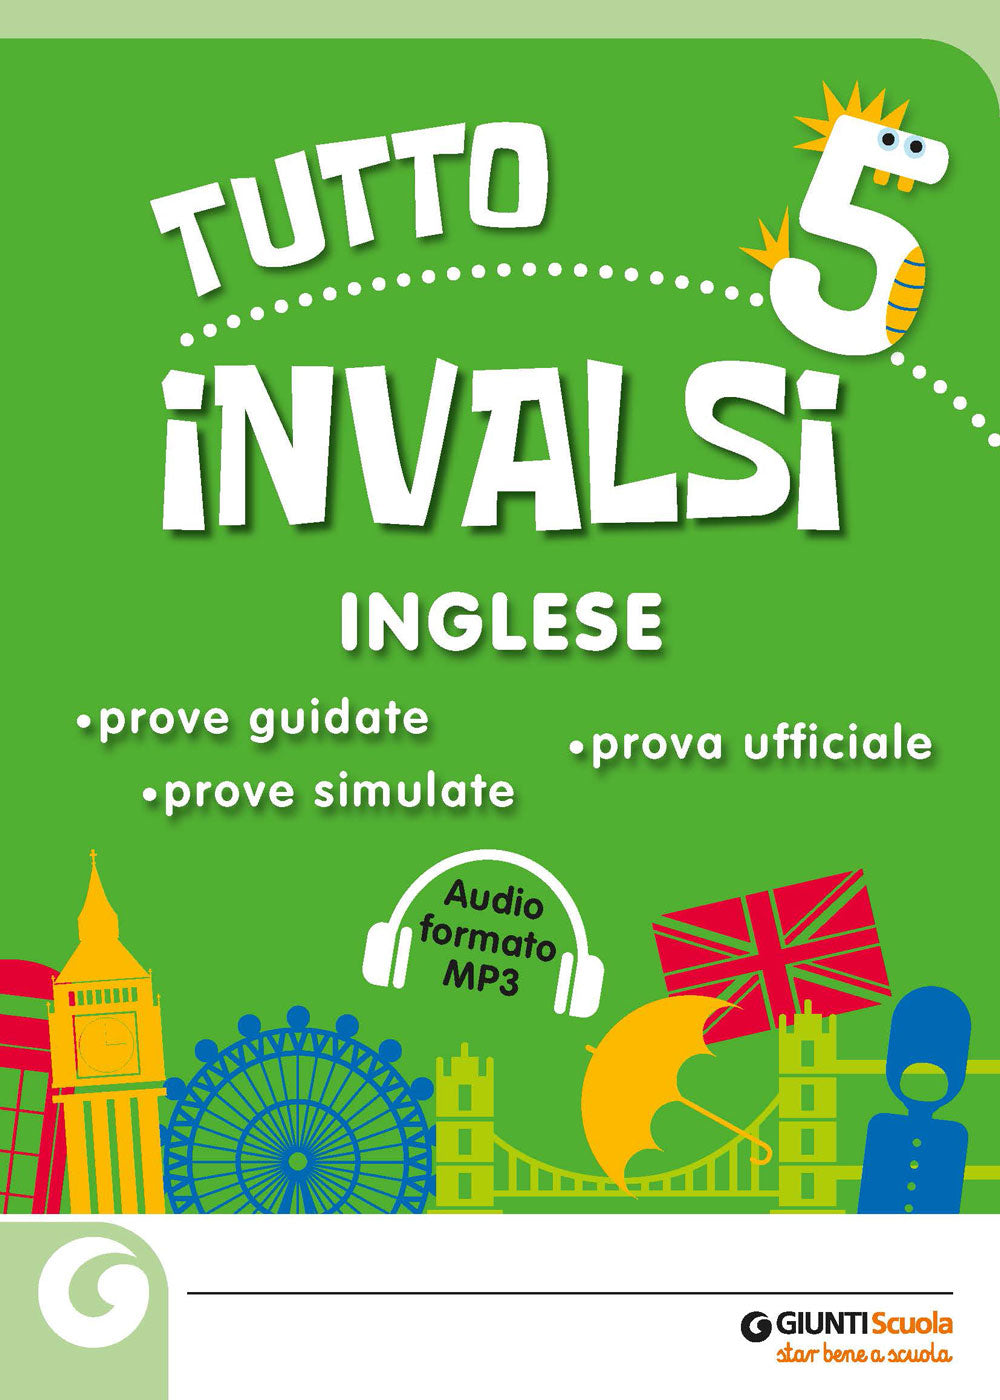 Tutto INVALSI - Inglese 5. Prove guidate - Prove simulate - Prova ufficiale